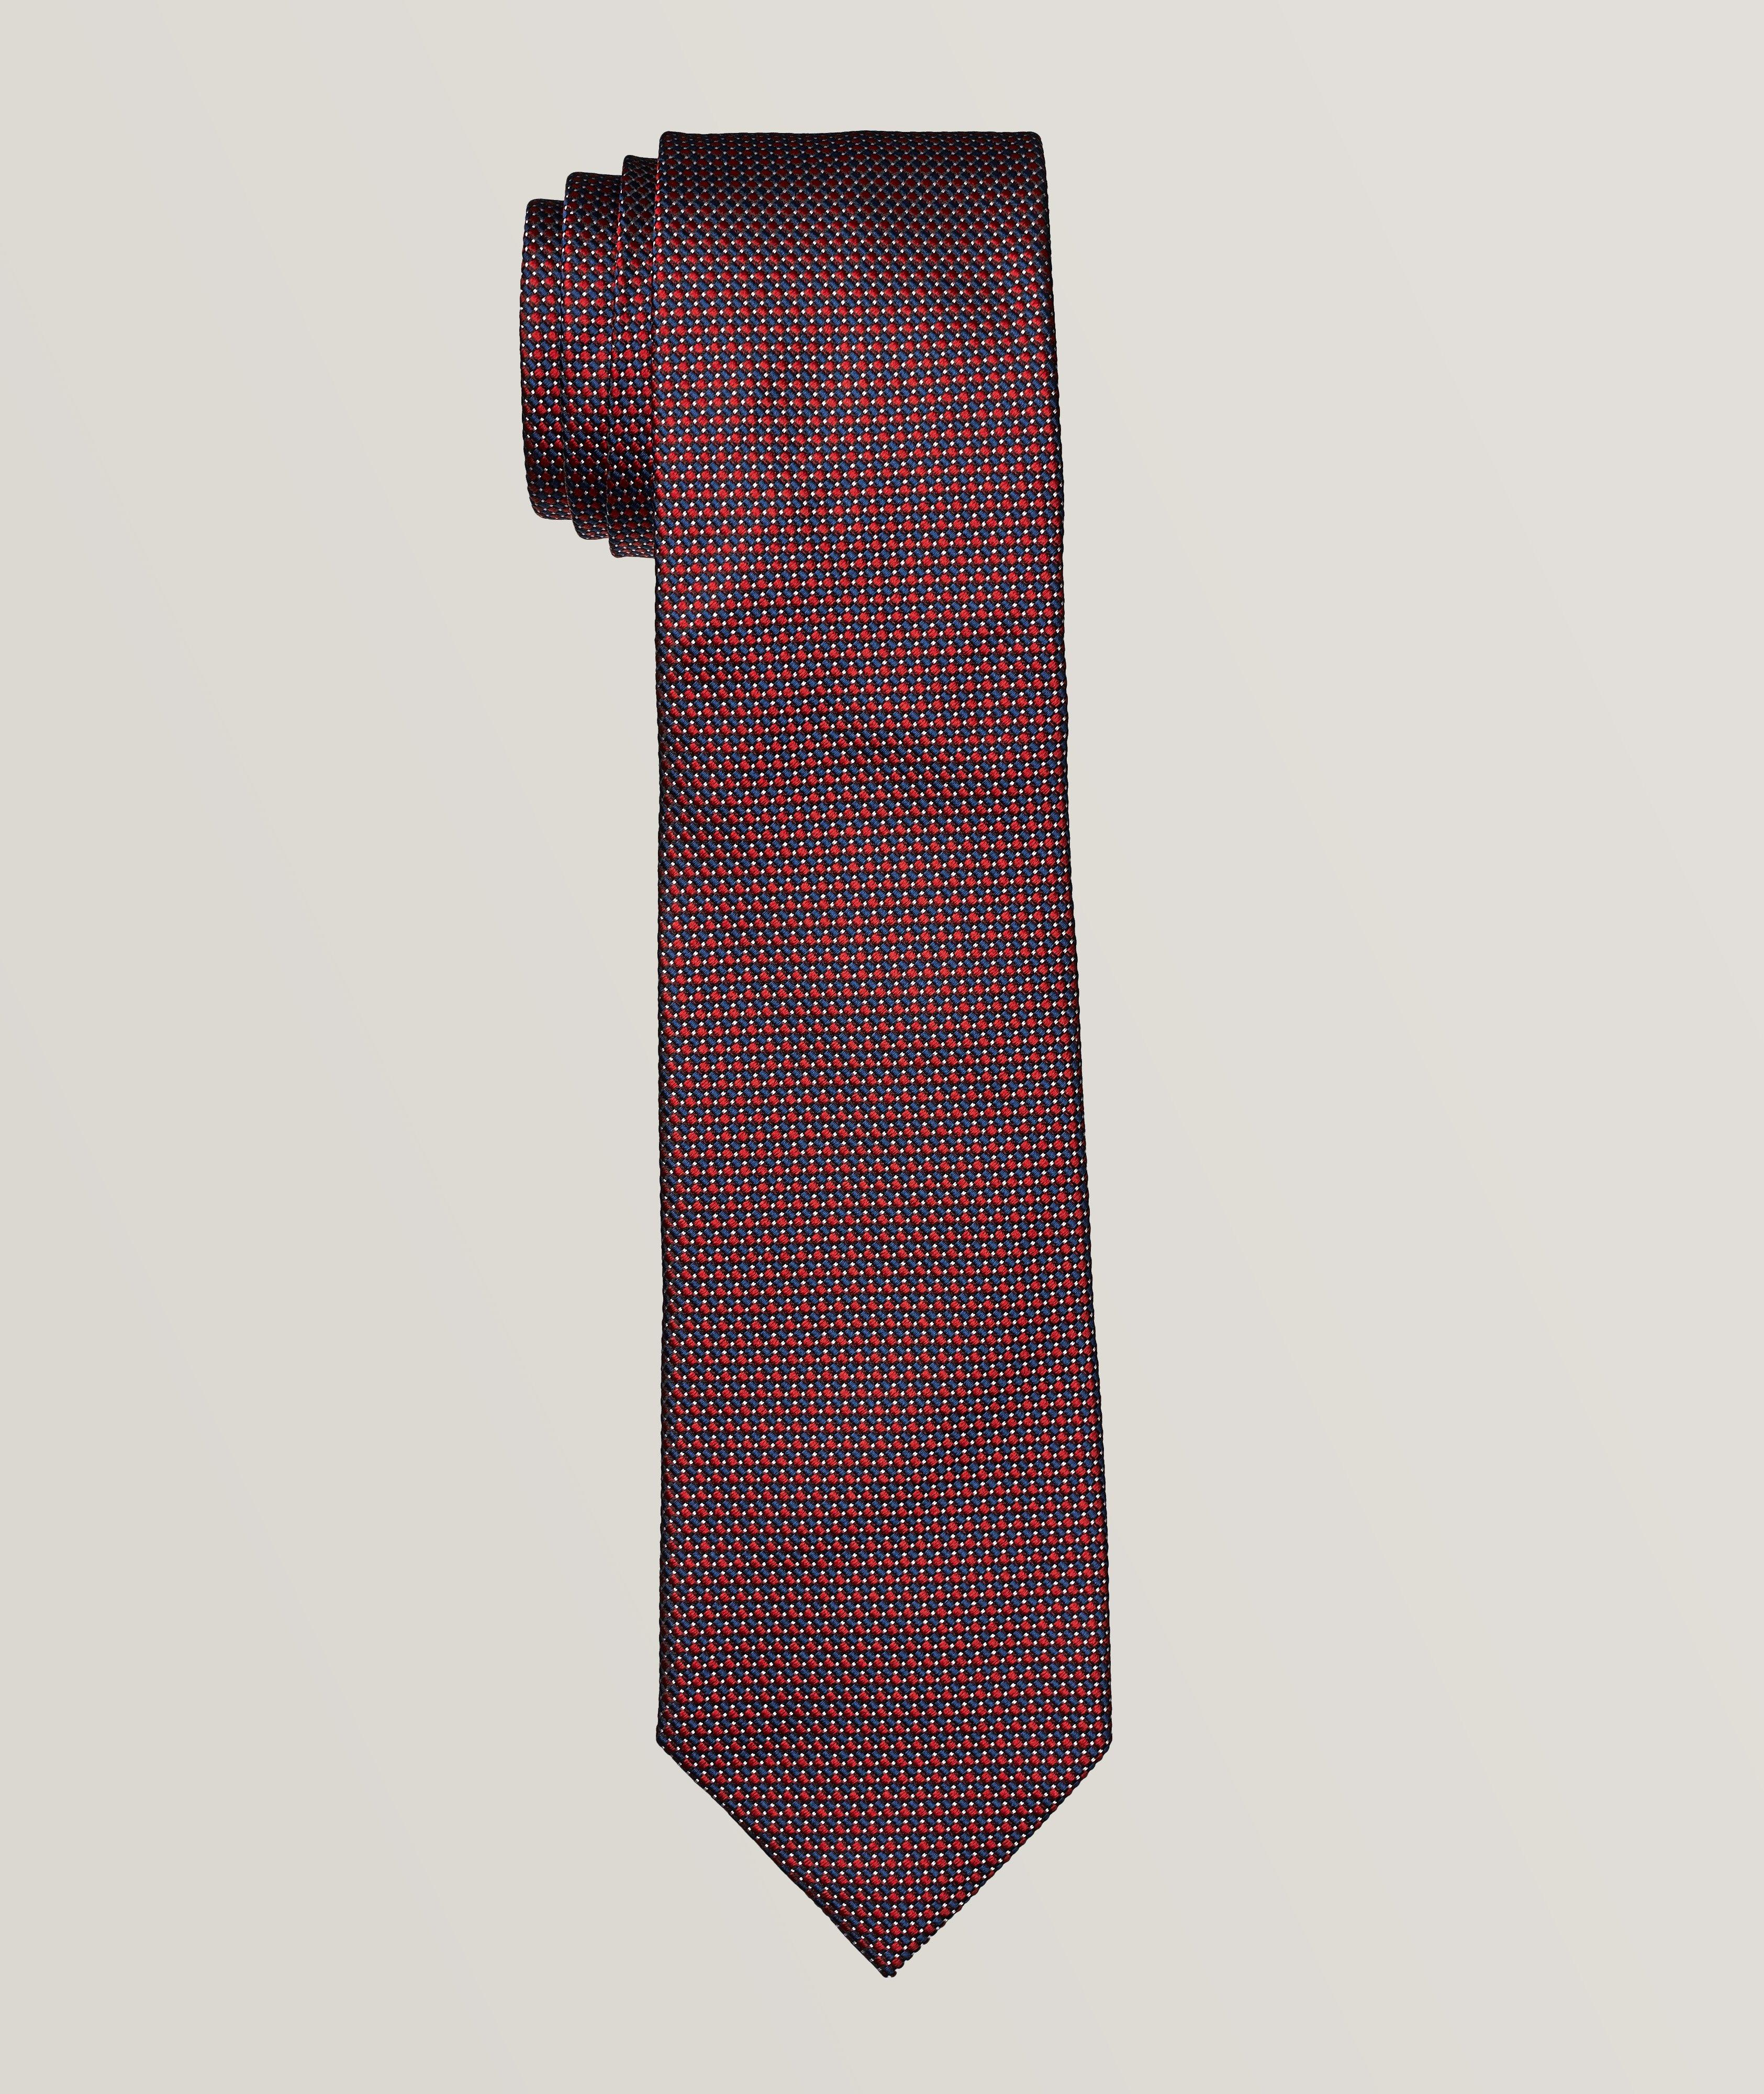 Cravate en soie à motif, collection Brera image 0